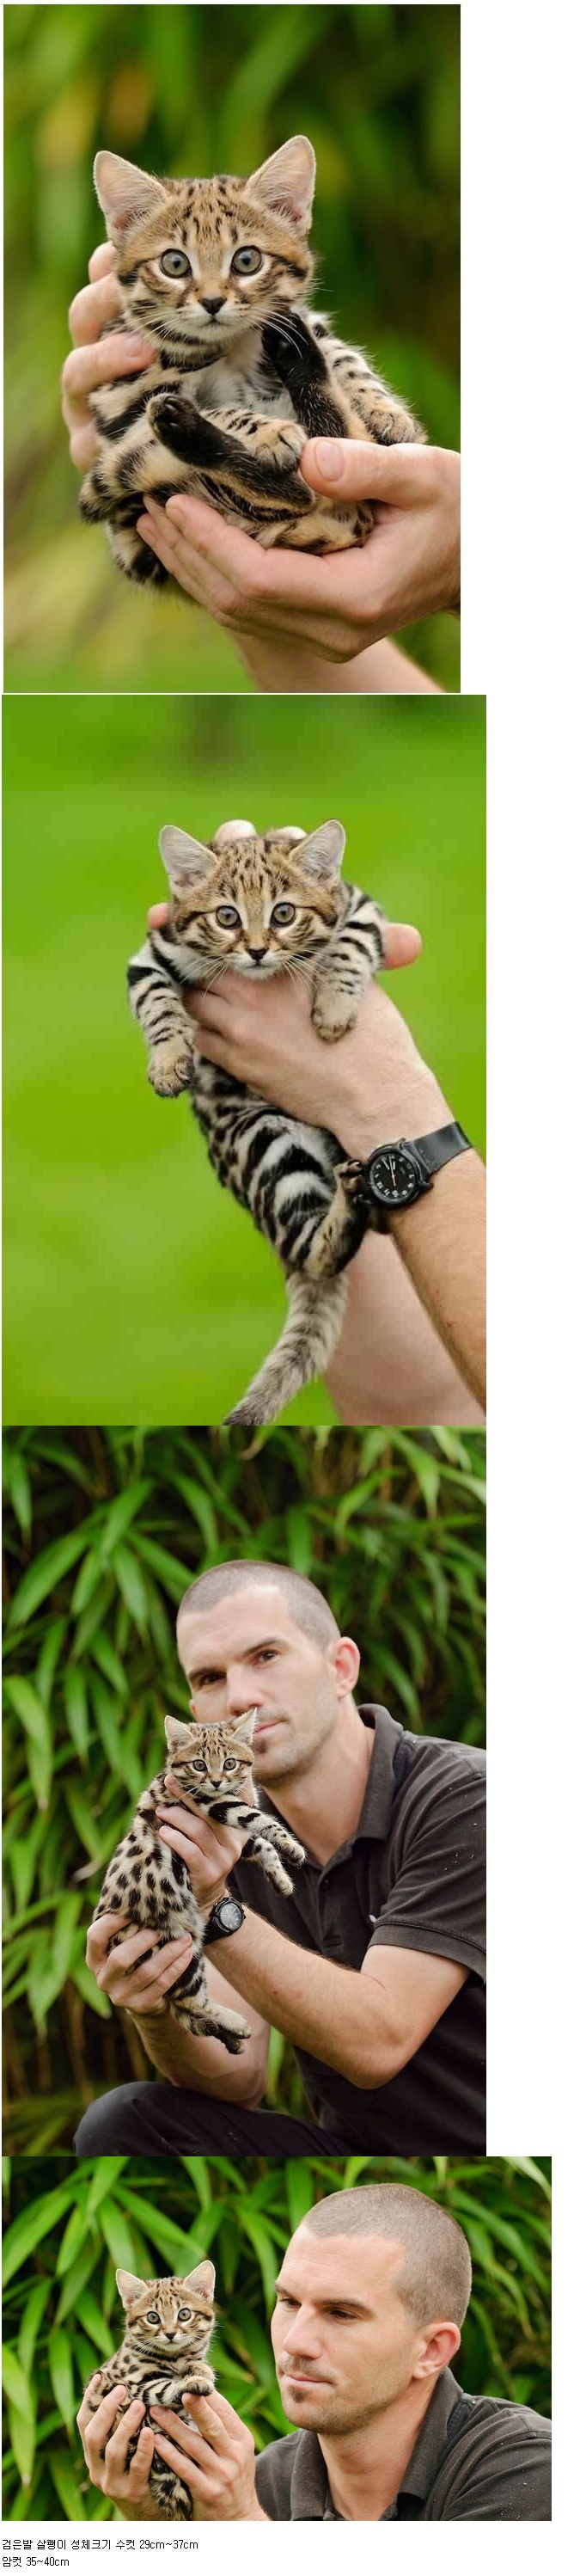 아프리카에서 가장 작은 고양이 과 동물 .jpg 1.jpg